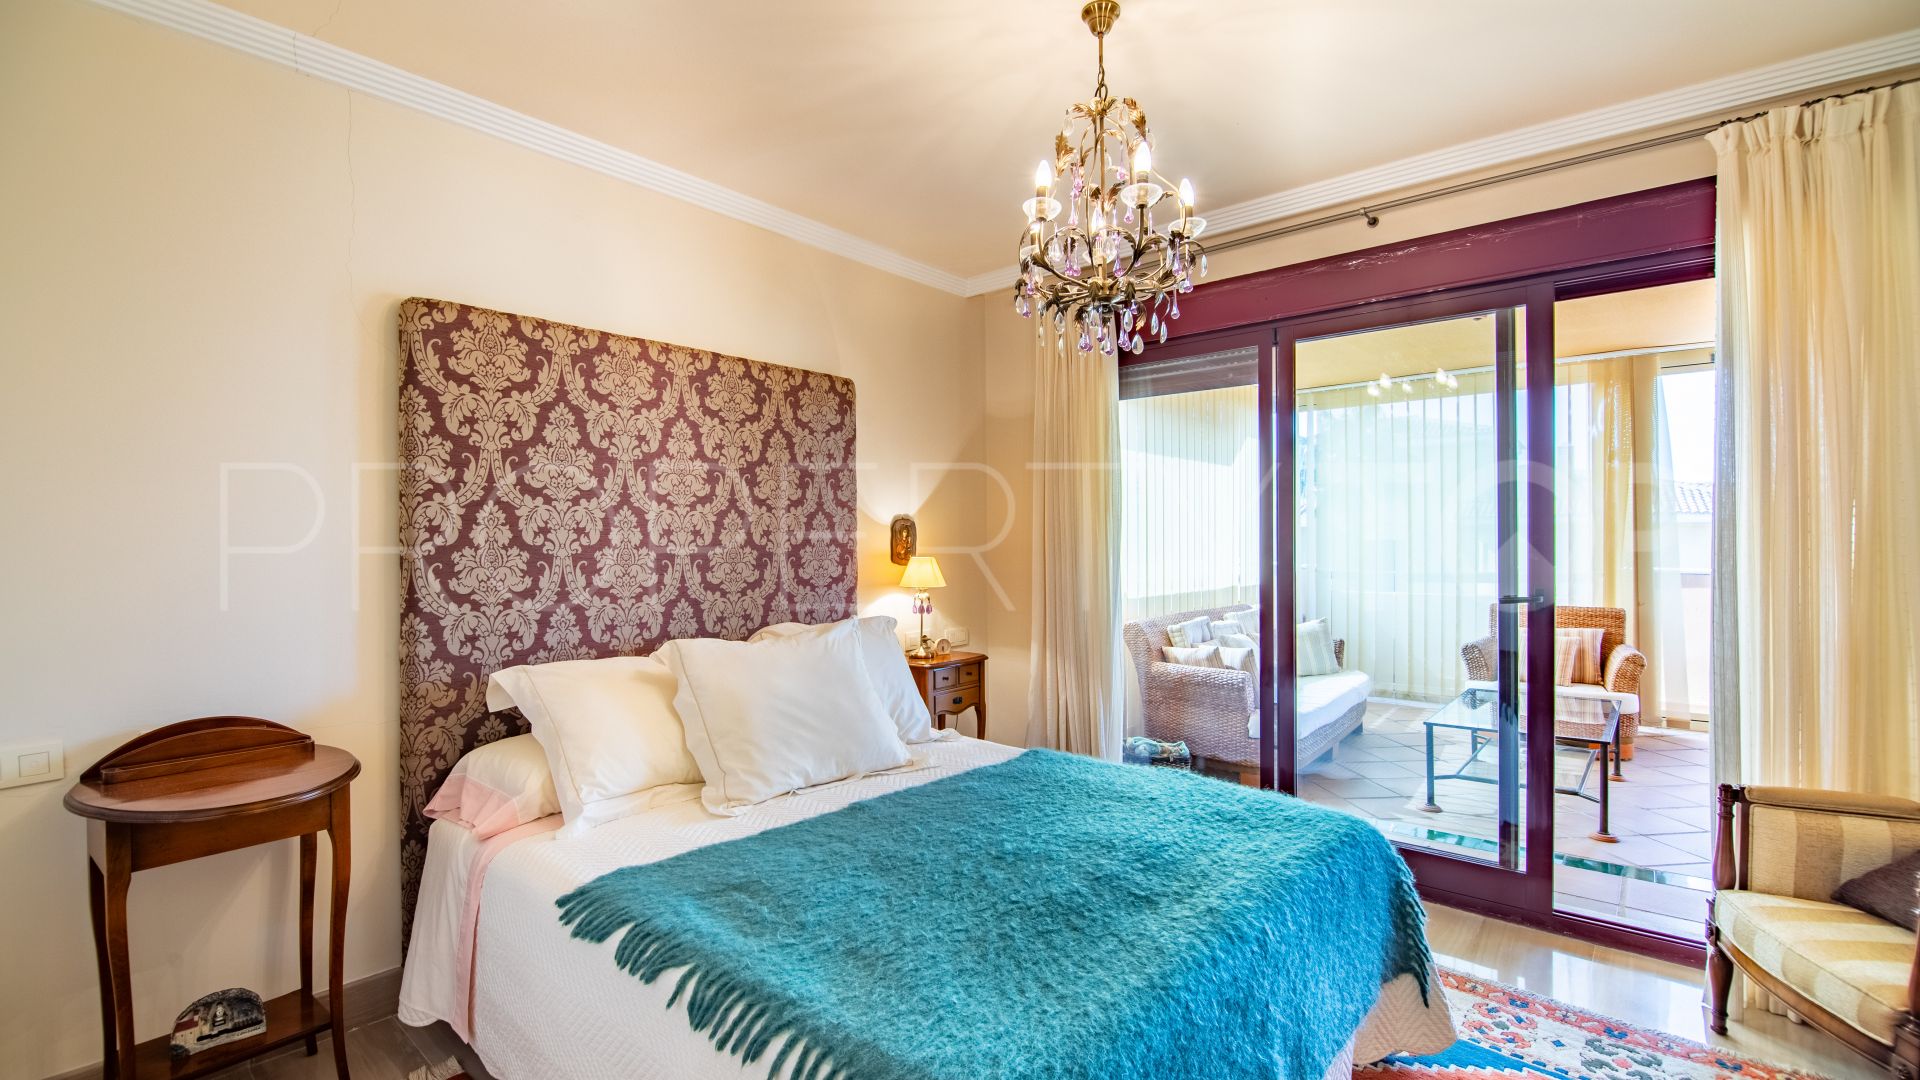 Apartamento con 3 dormitorios en venta en Los Gazules de Almenara